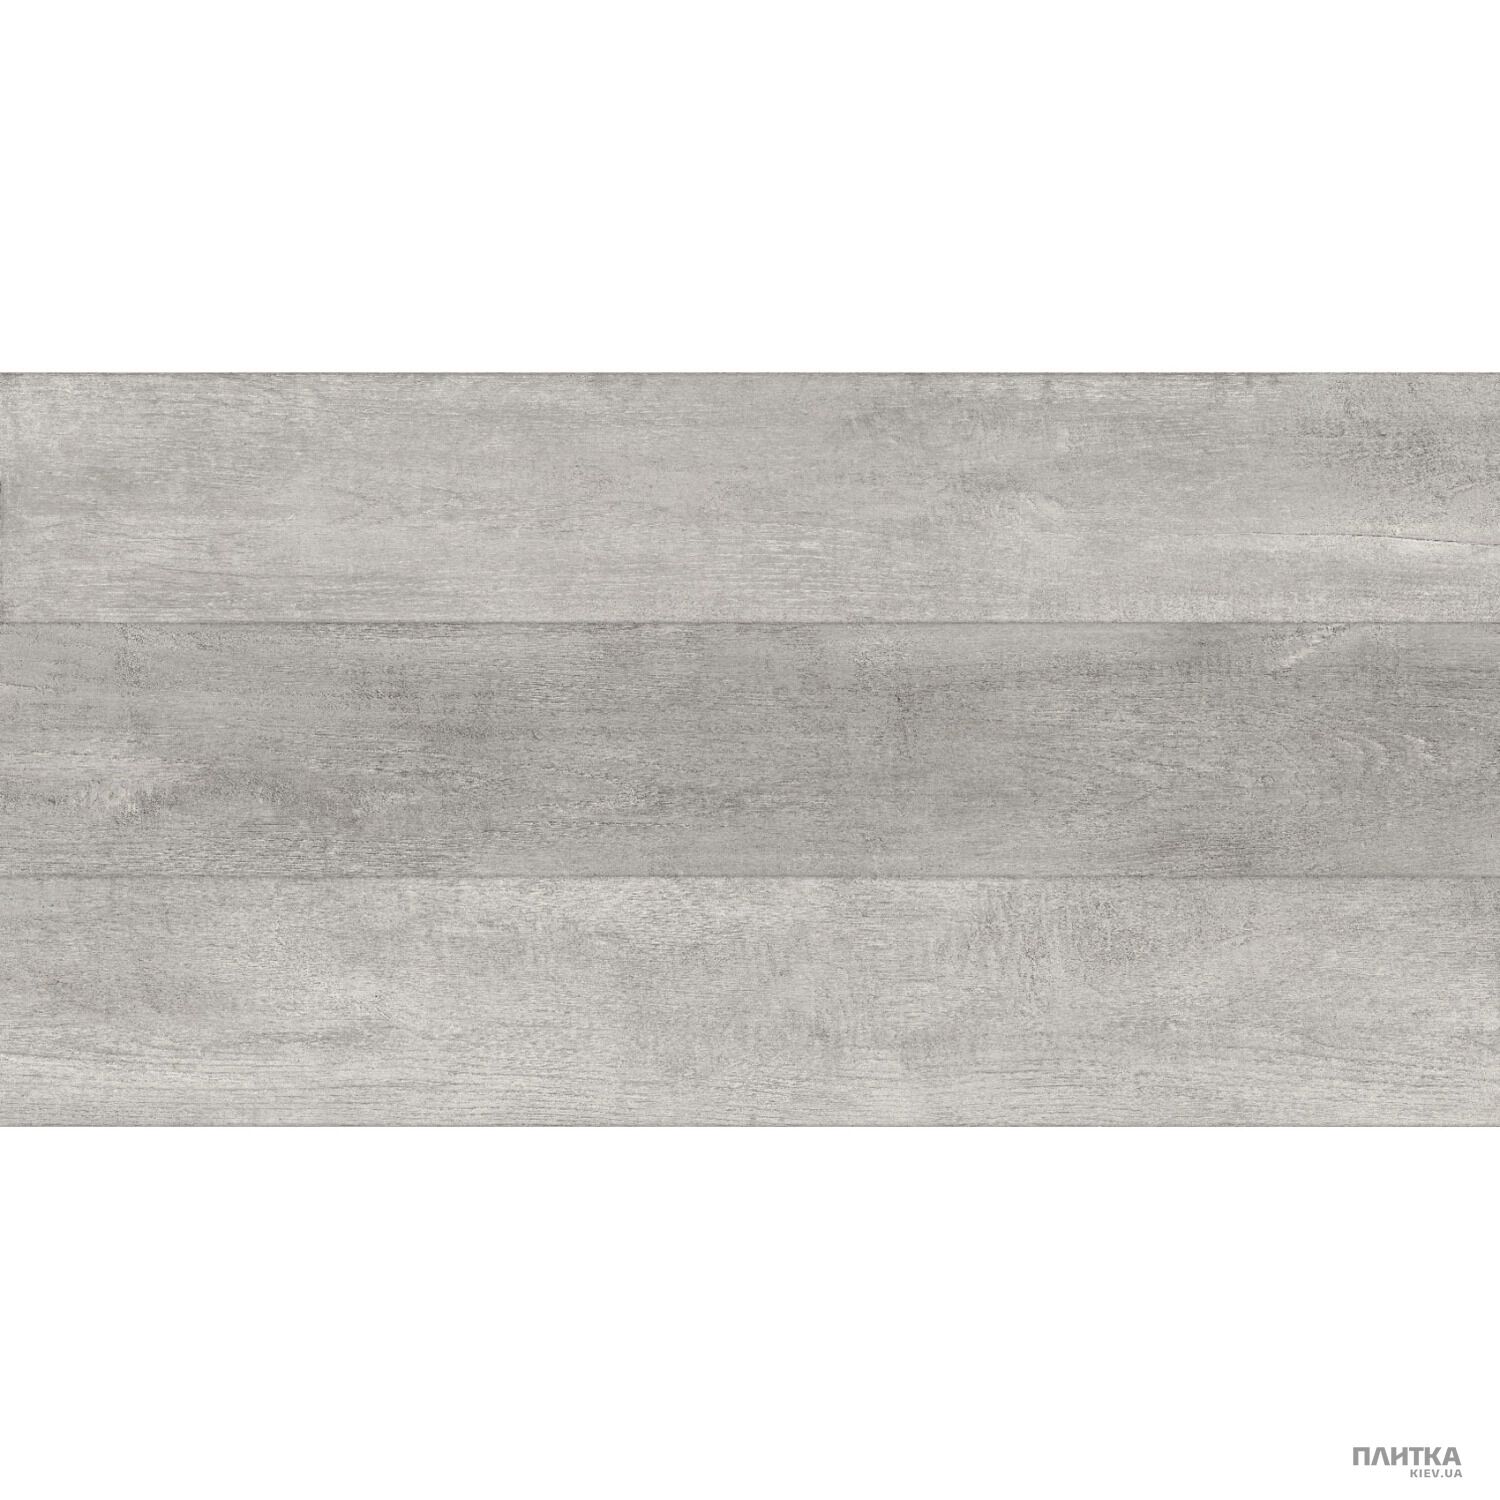 Керамогранит Golden Tile Abba ABBA Wood Серый 652161 серый